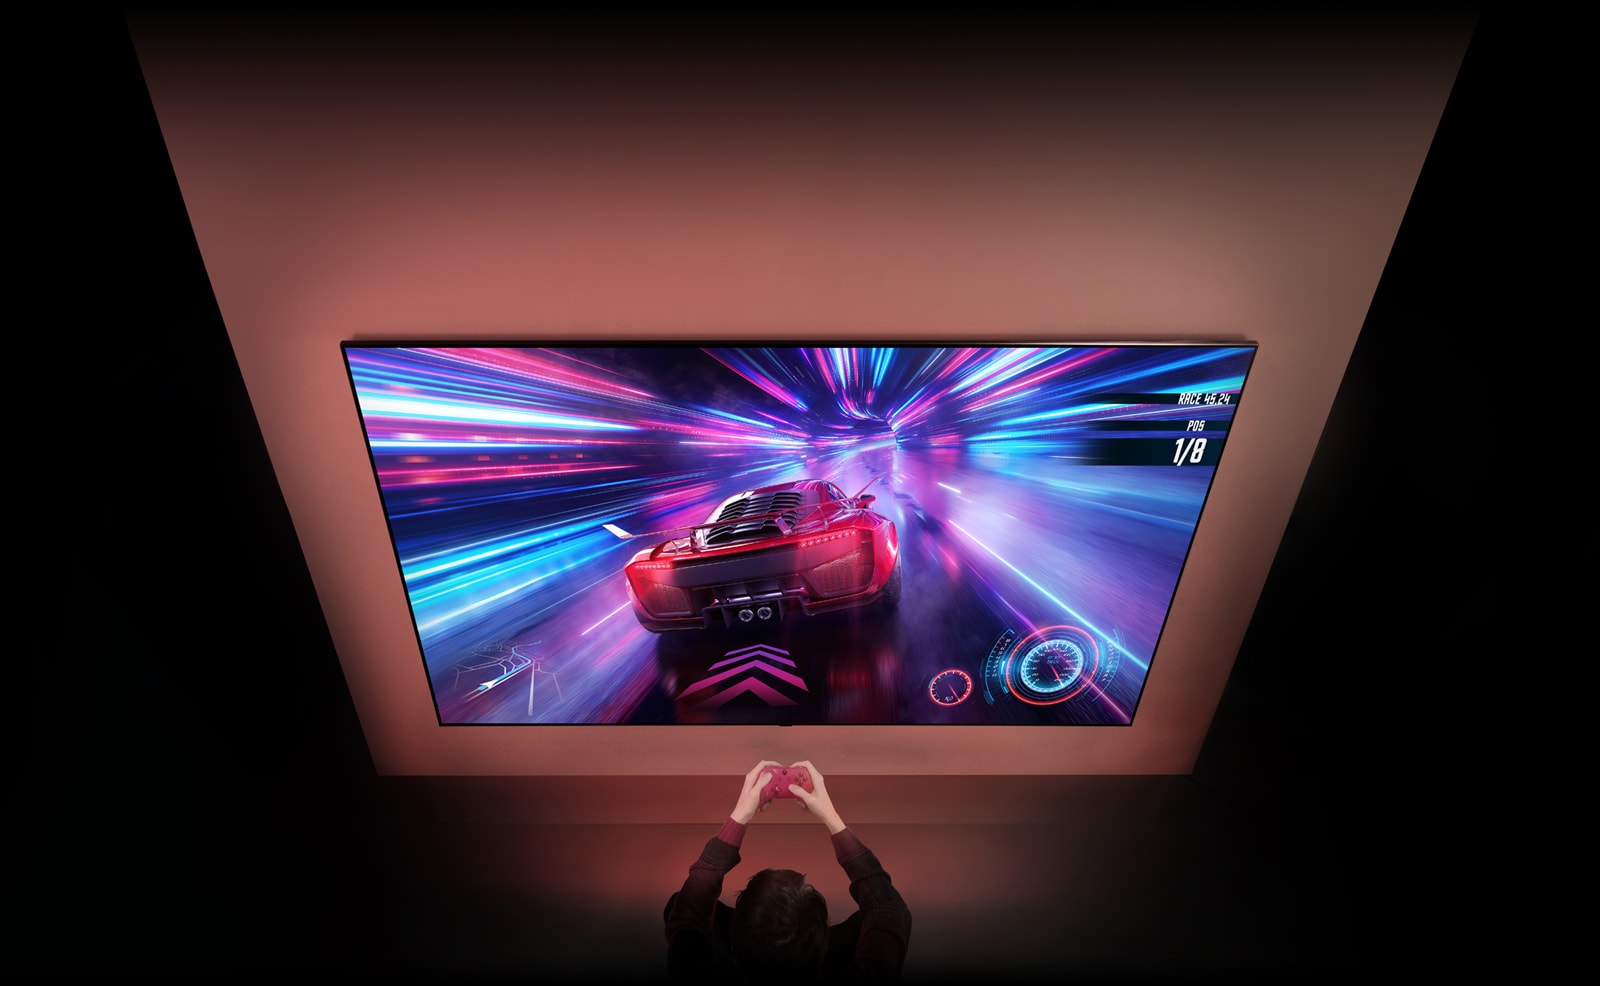 Na ścianie wisi duży telewizor, na którego ekranie widać kadr z gry wyścigowej. Przed telewizorem widać dłonie i kontrolery osoby skupionej na grze.